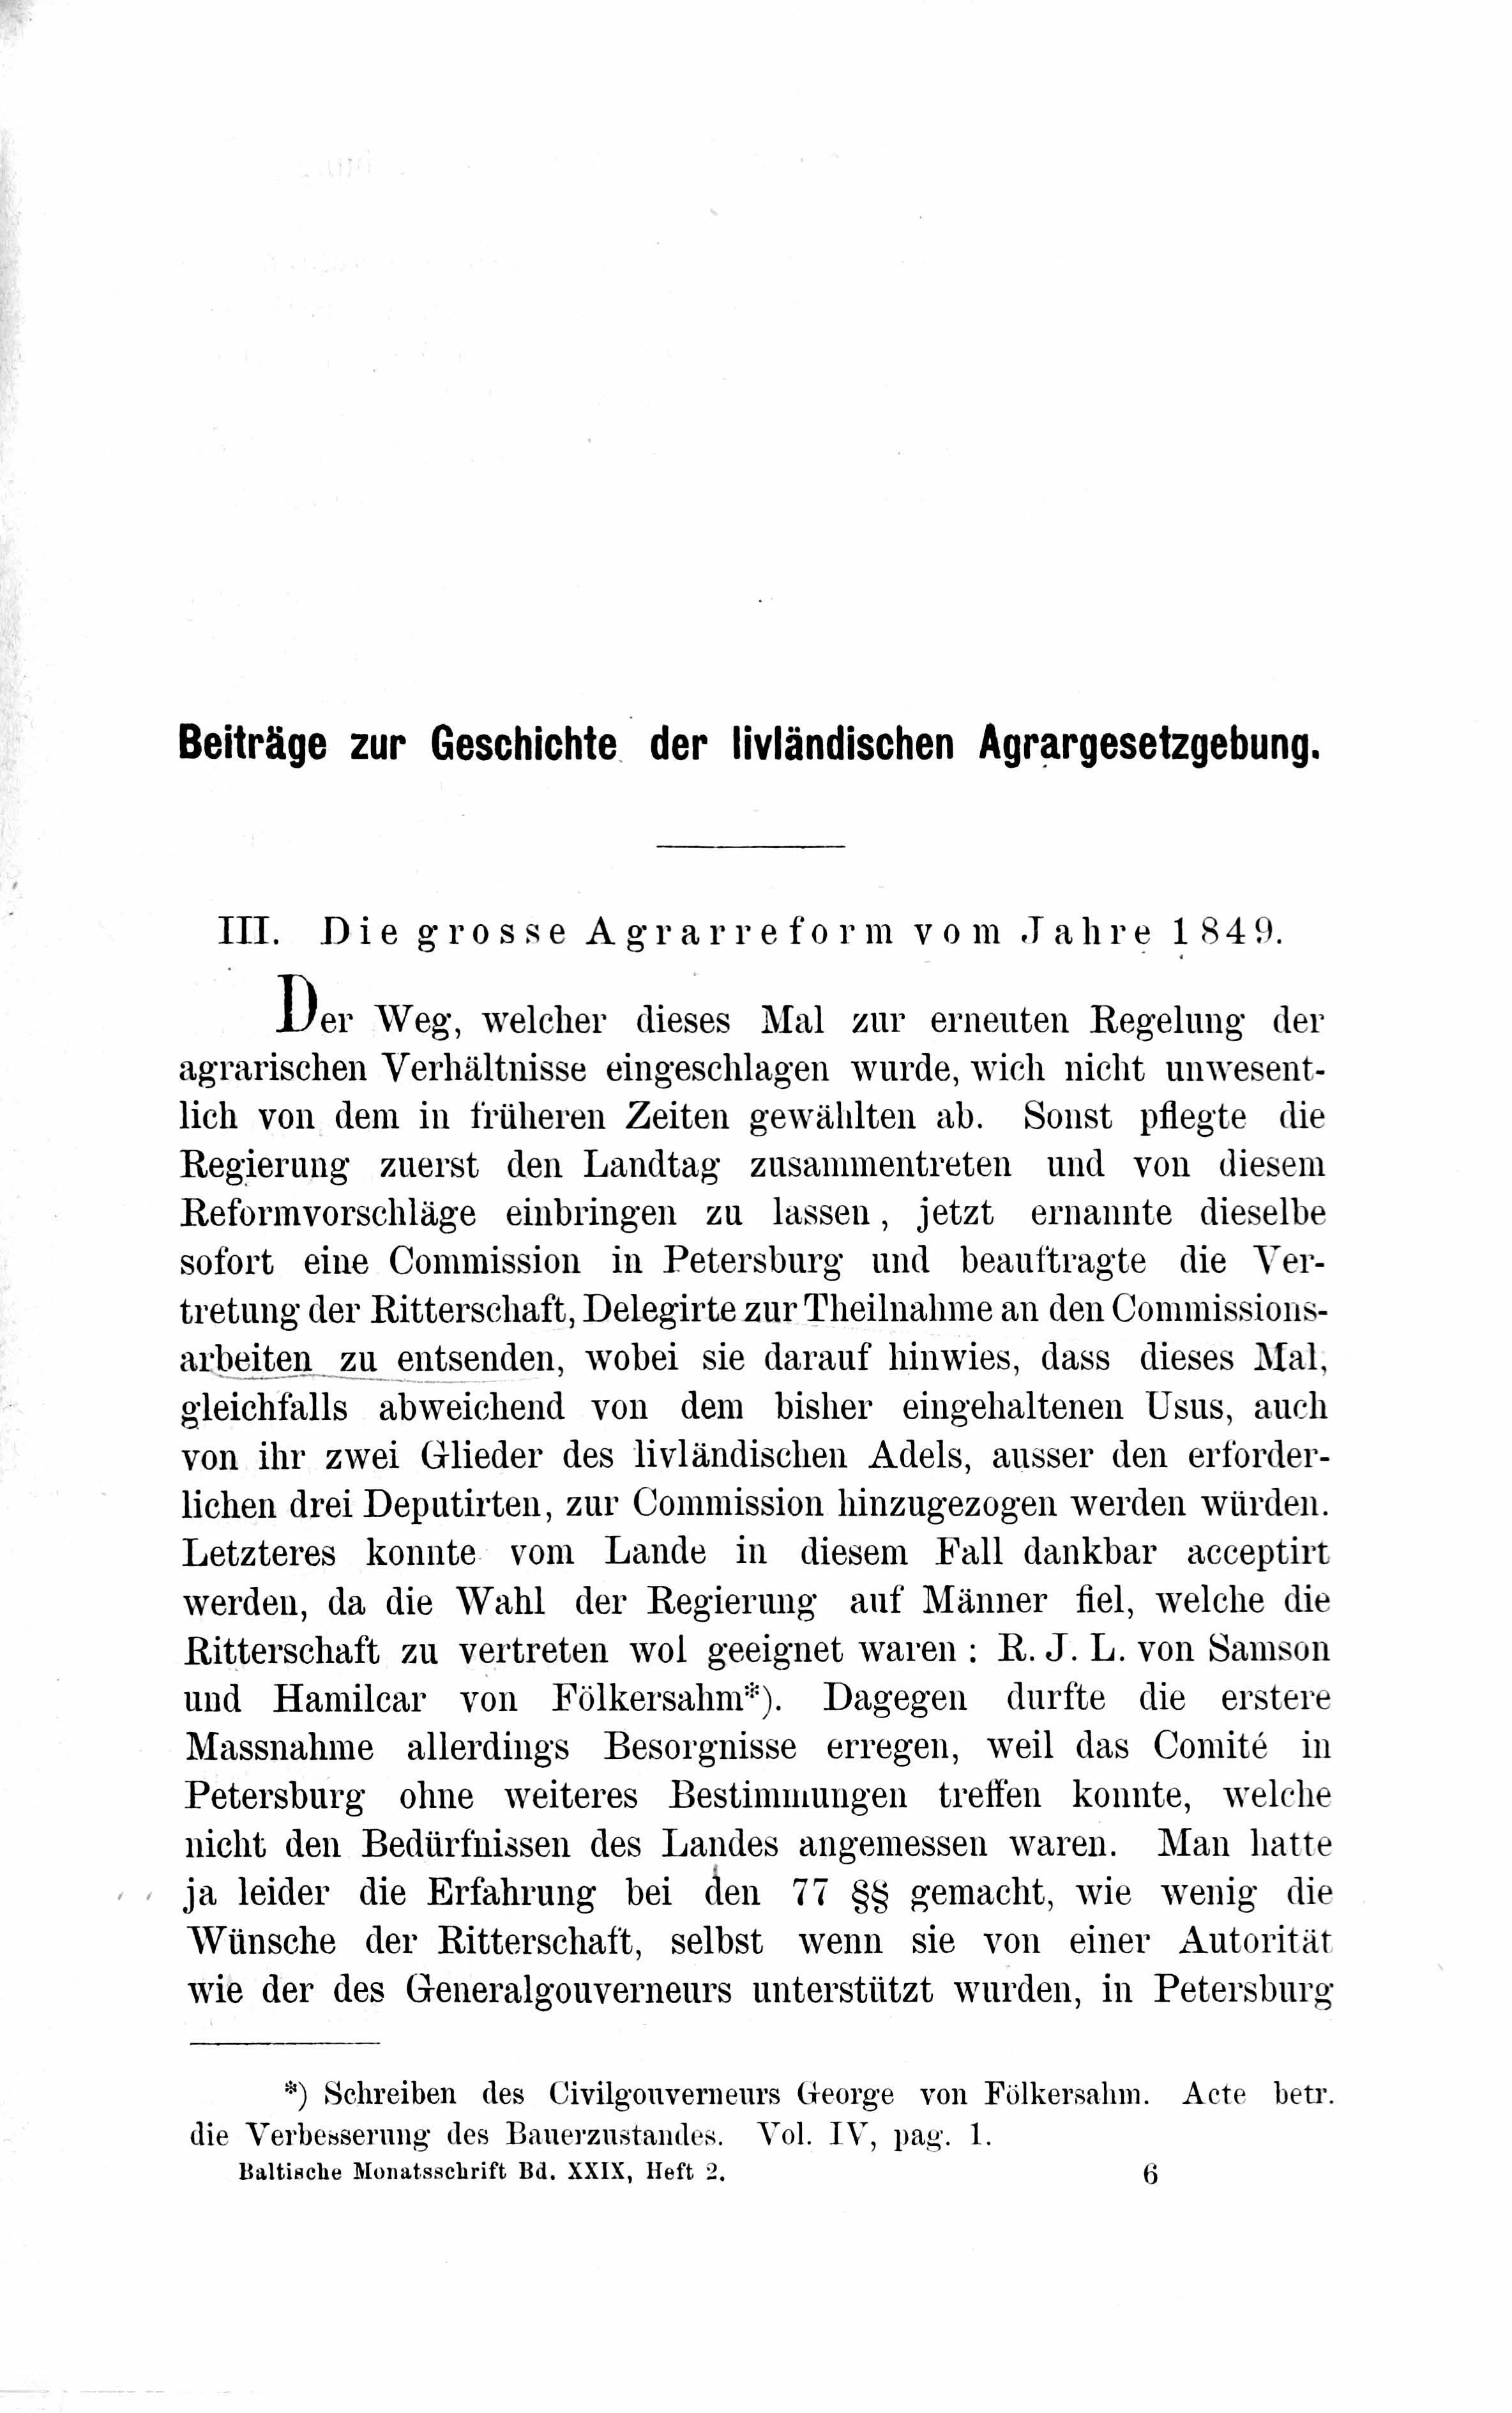 Baltische Monatsschrift [29] (1882) | 85. Основной текст